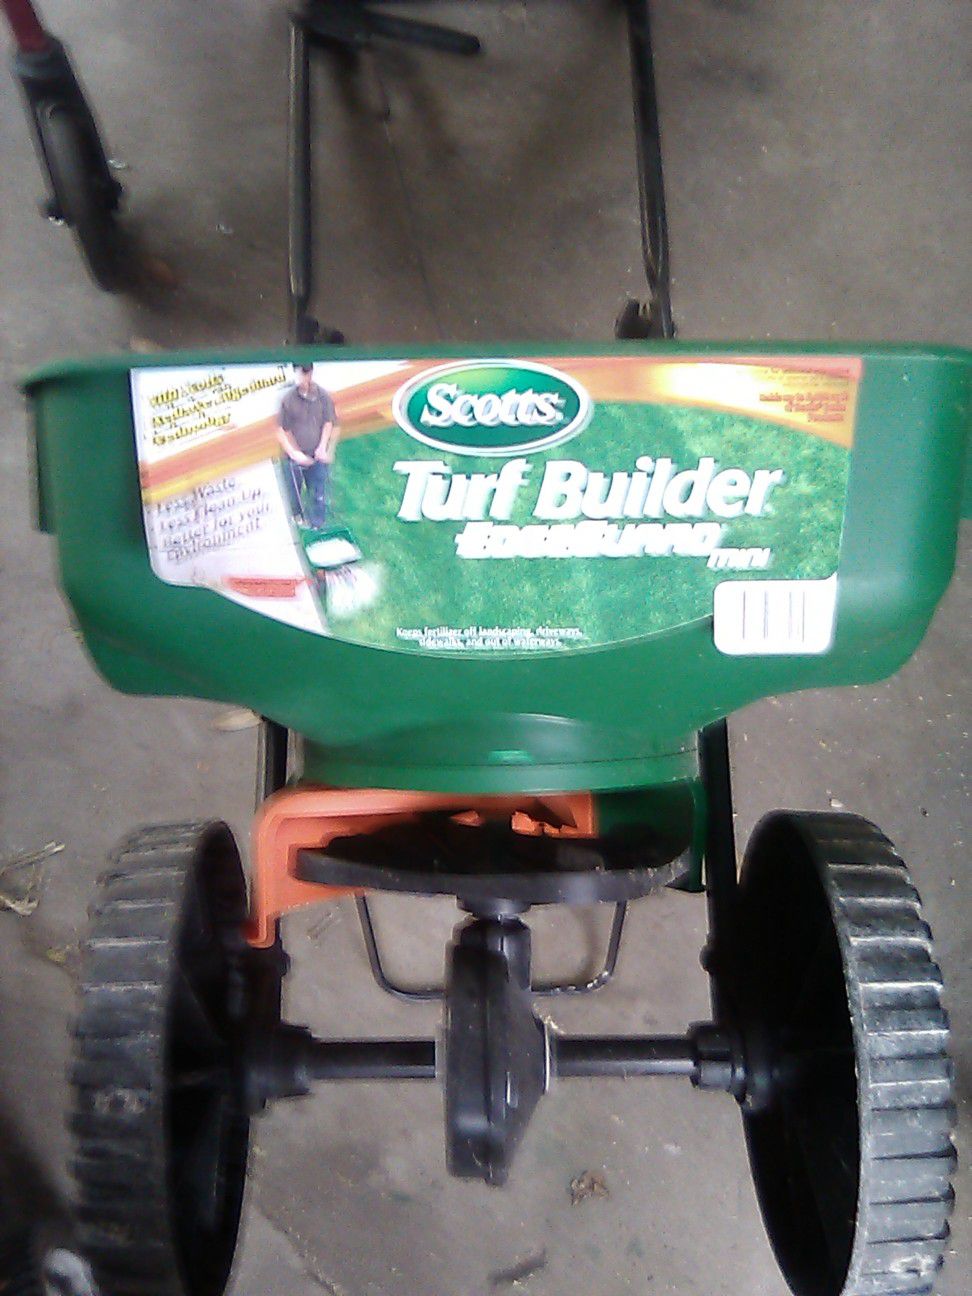 Scott's seeder/fertilizer